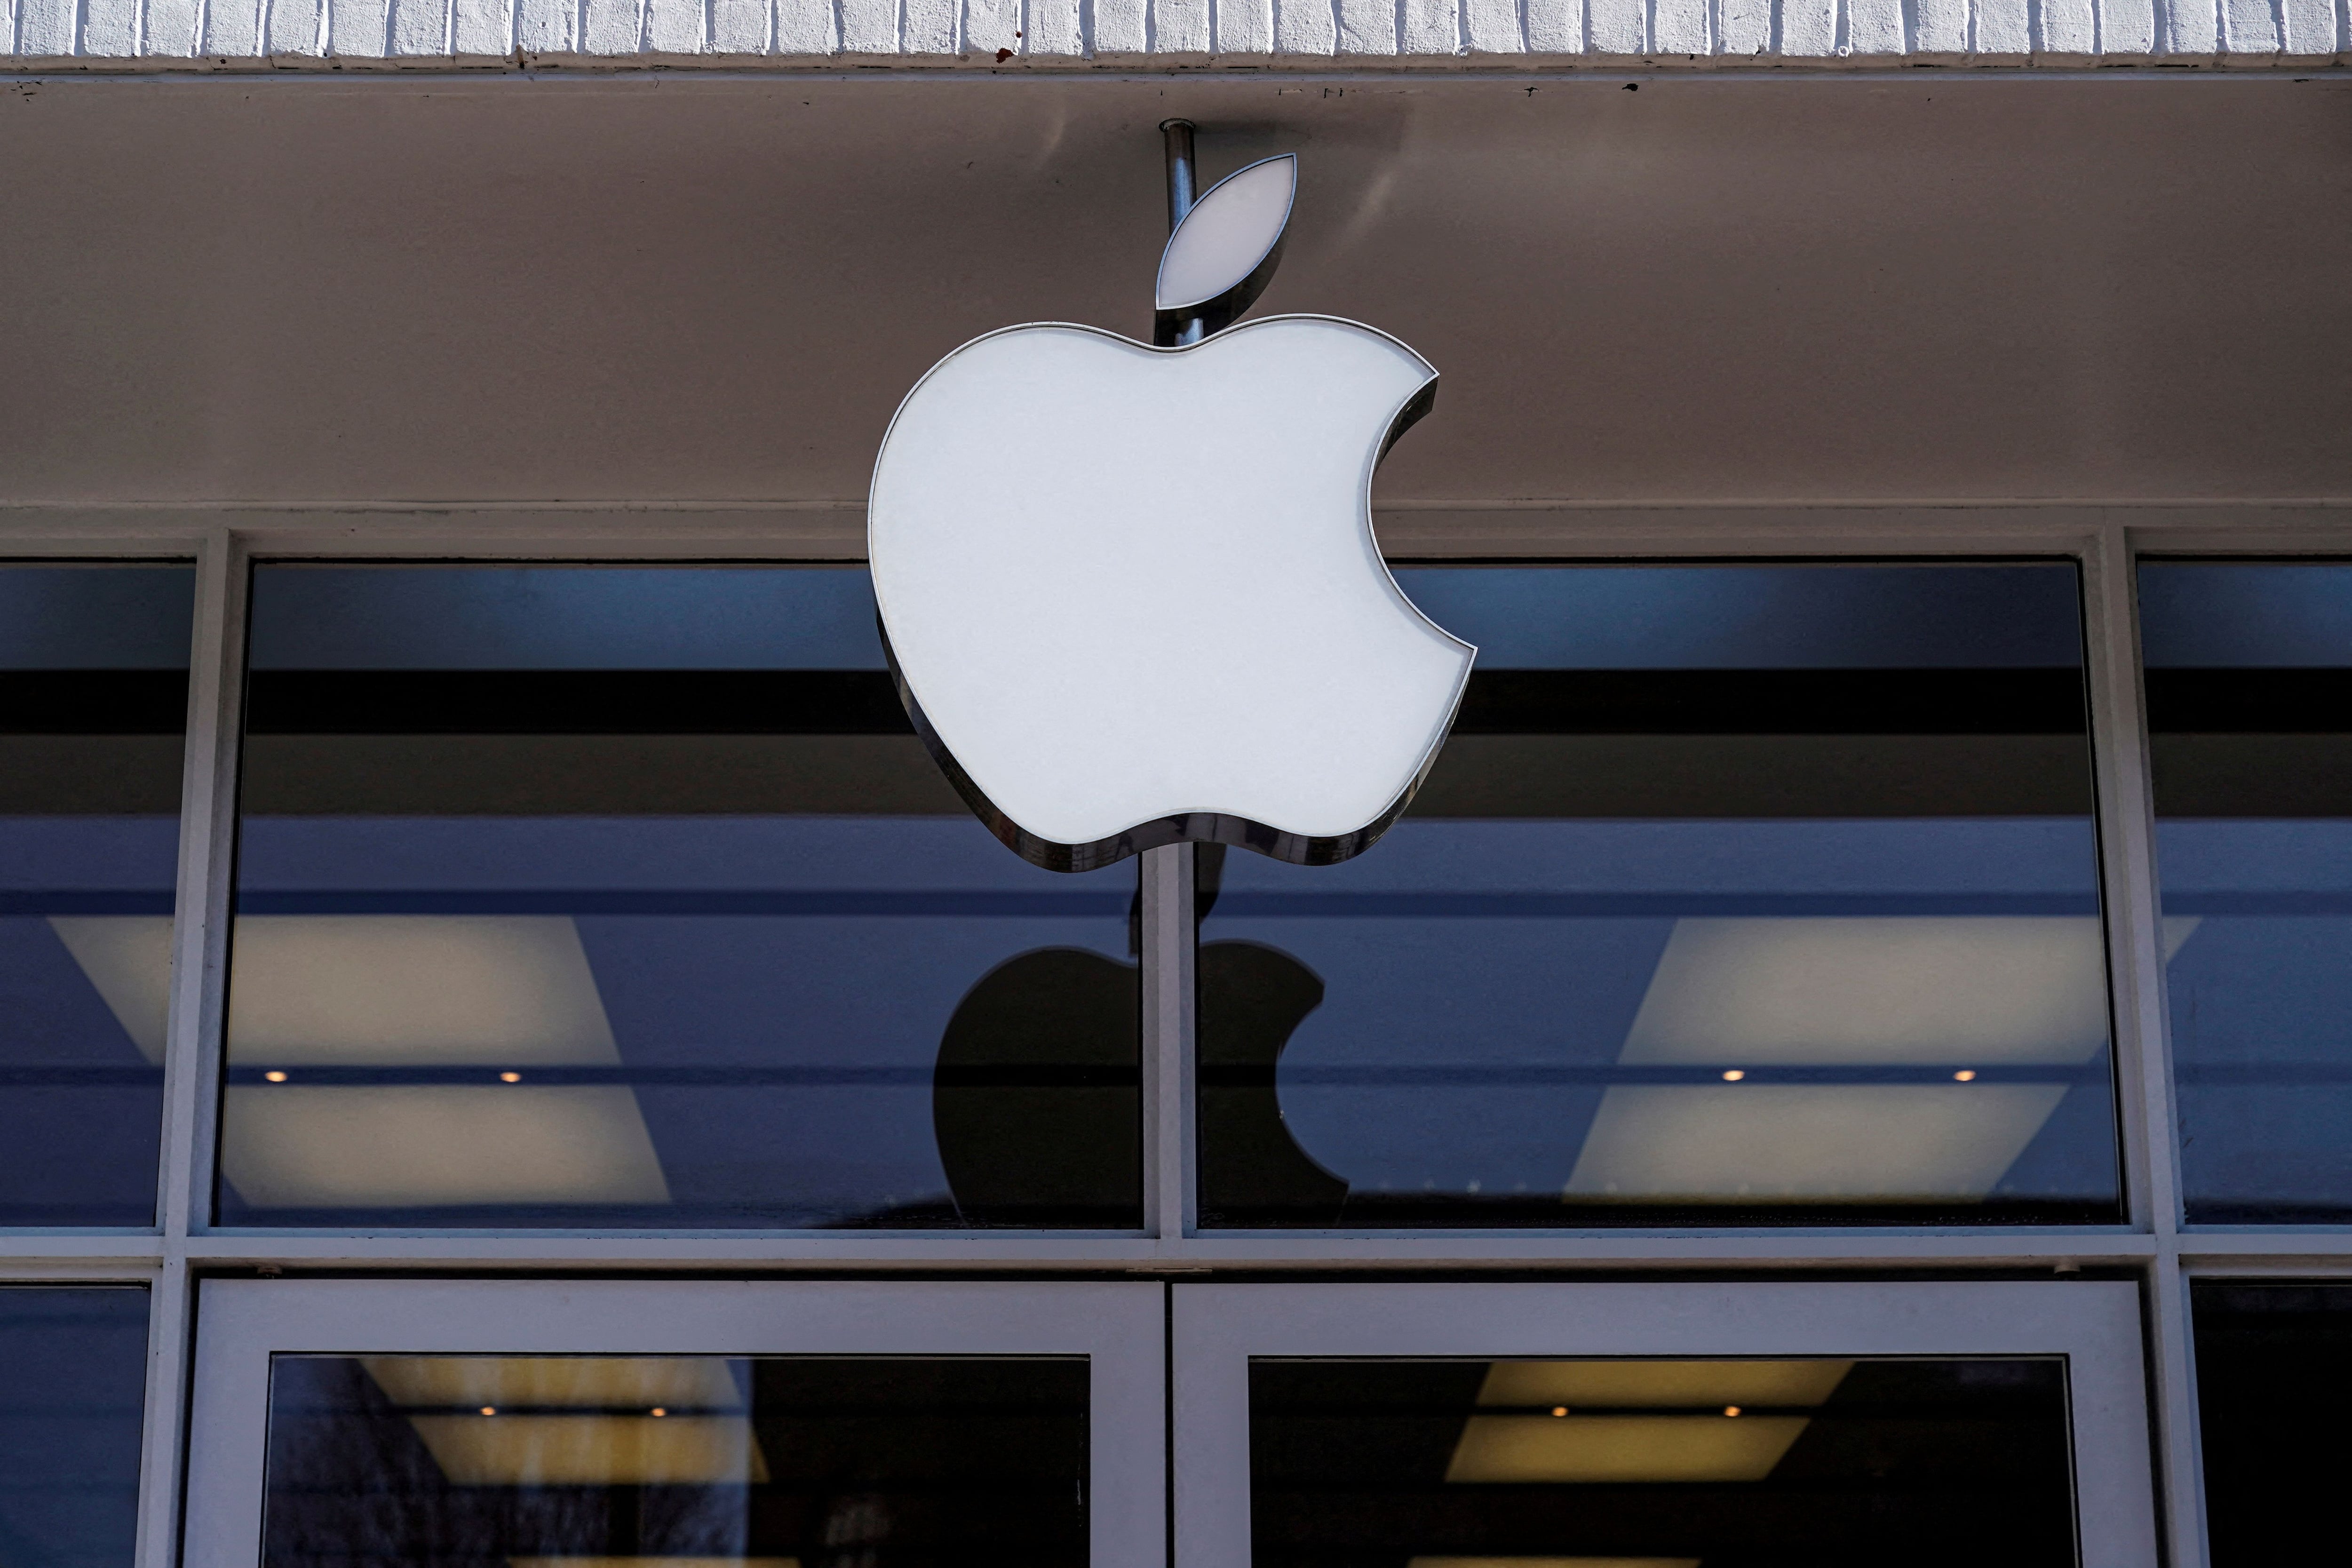 Apple destaca la alta calidad de sus productos y servicios. (REUTERS/Joshua Roberts)